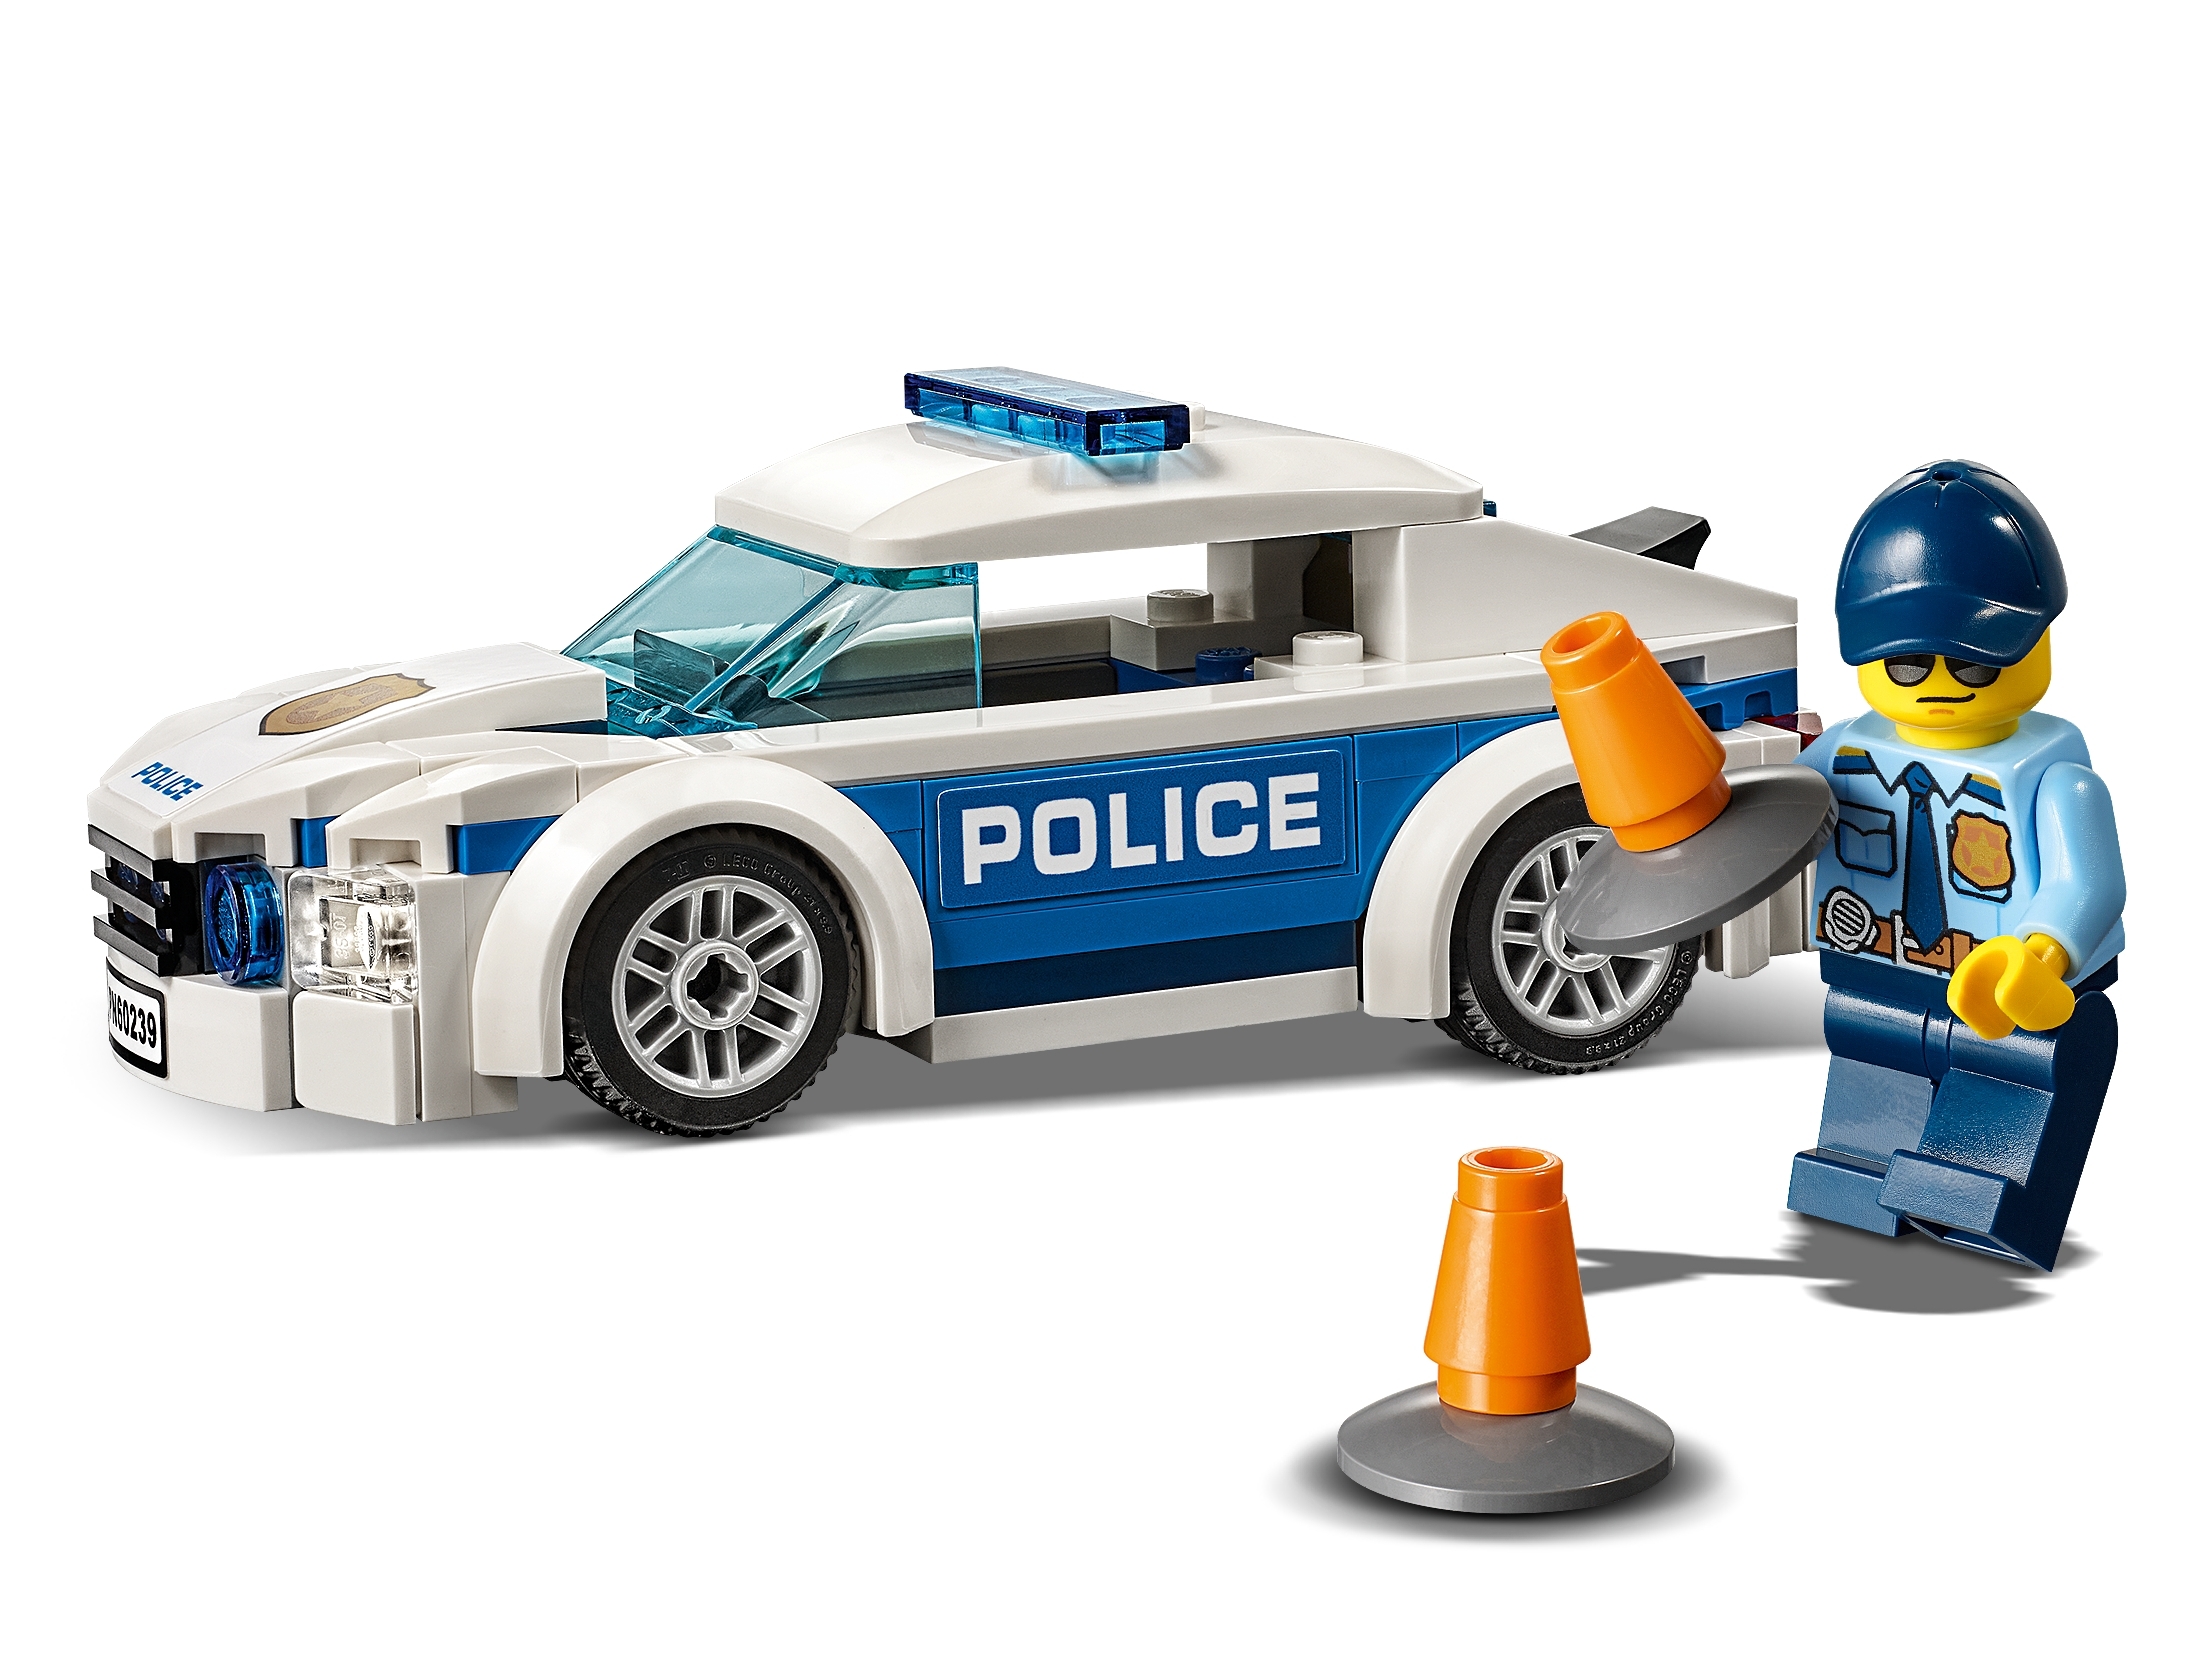 LEGO 60239 City Police Patrol Car Set 92 Pieces